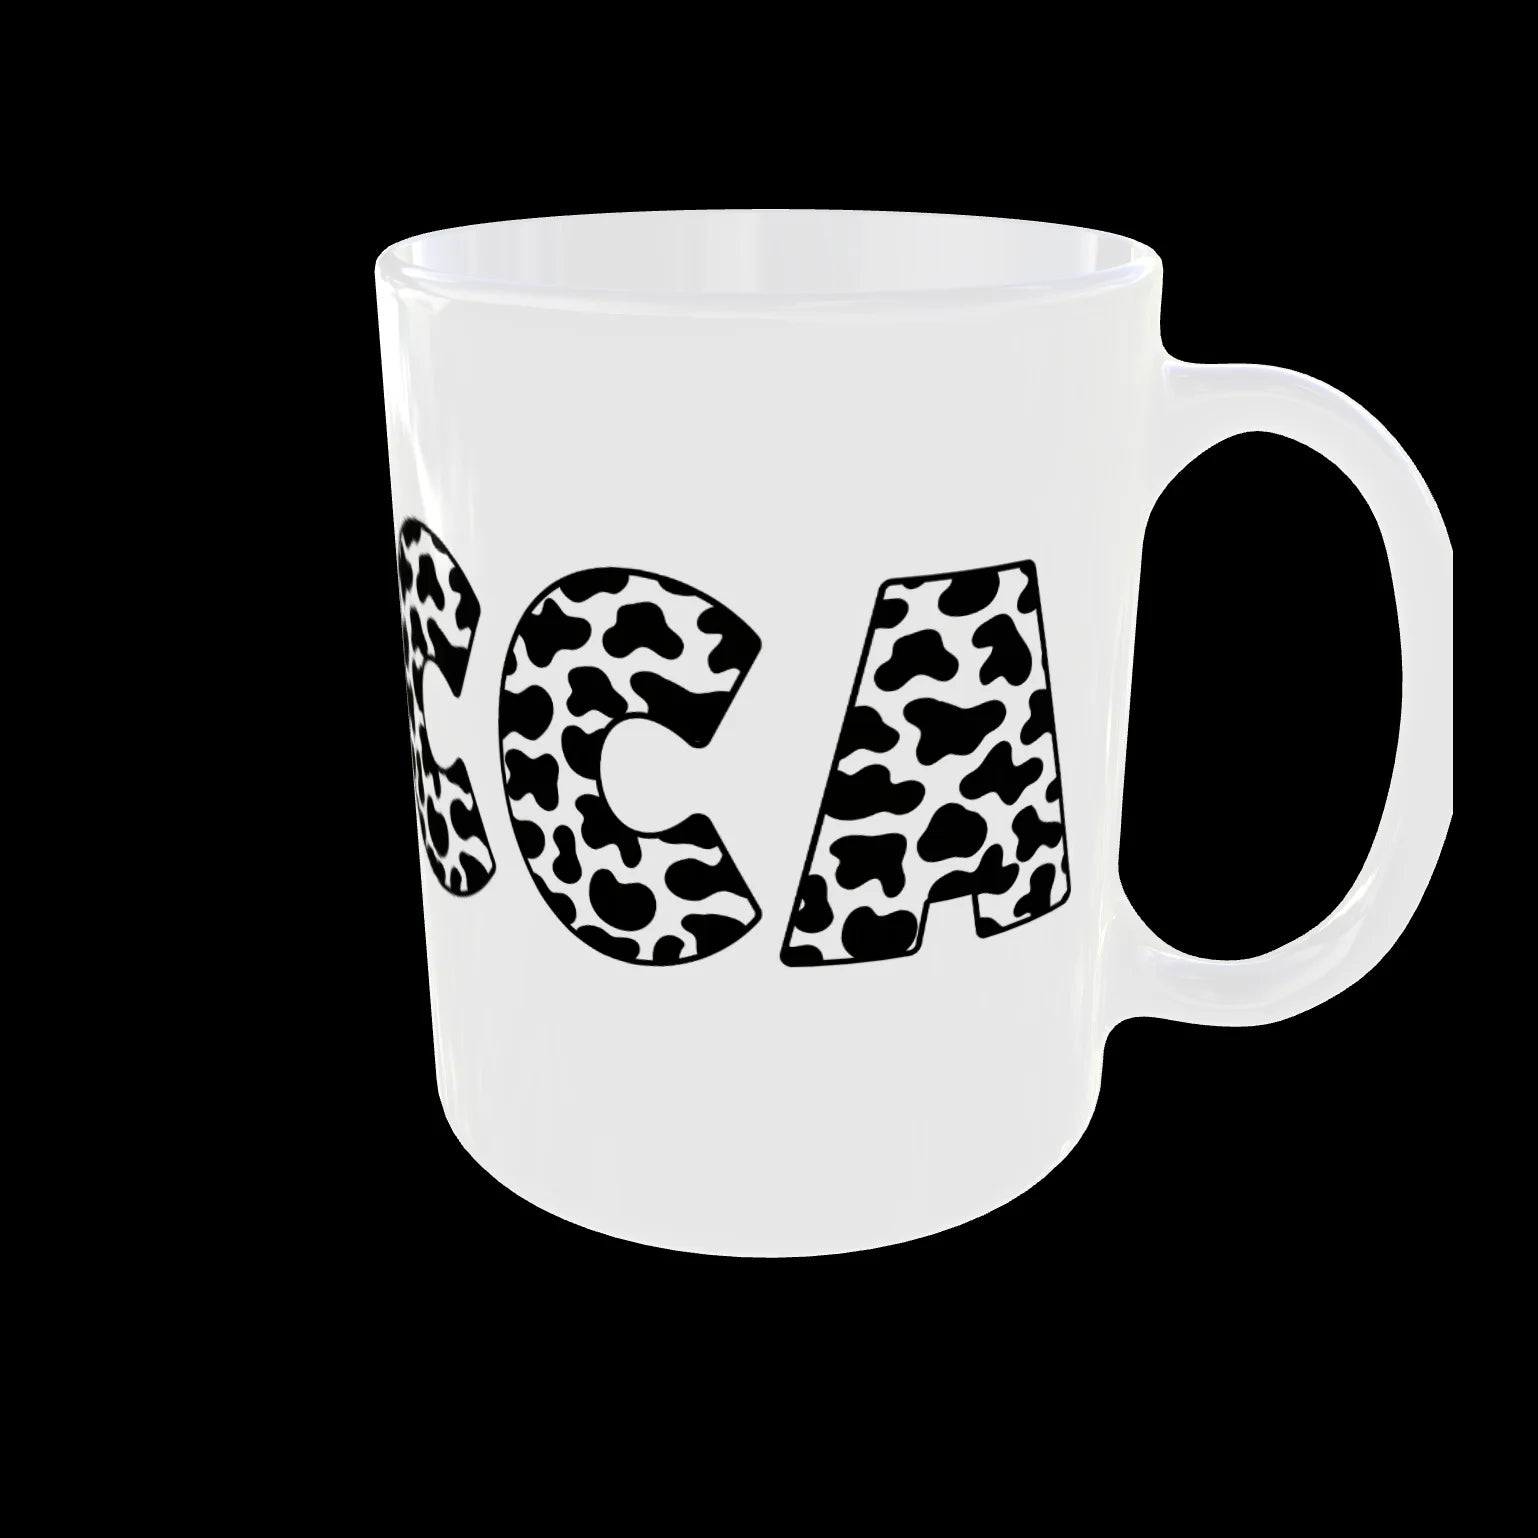 Personalised Name Mug Cow Animal Print Custom Gifts